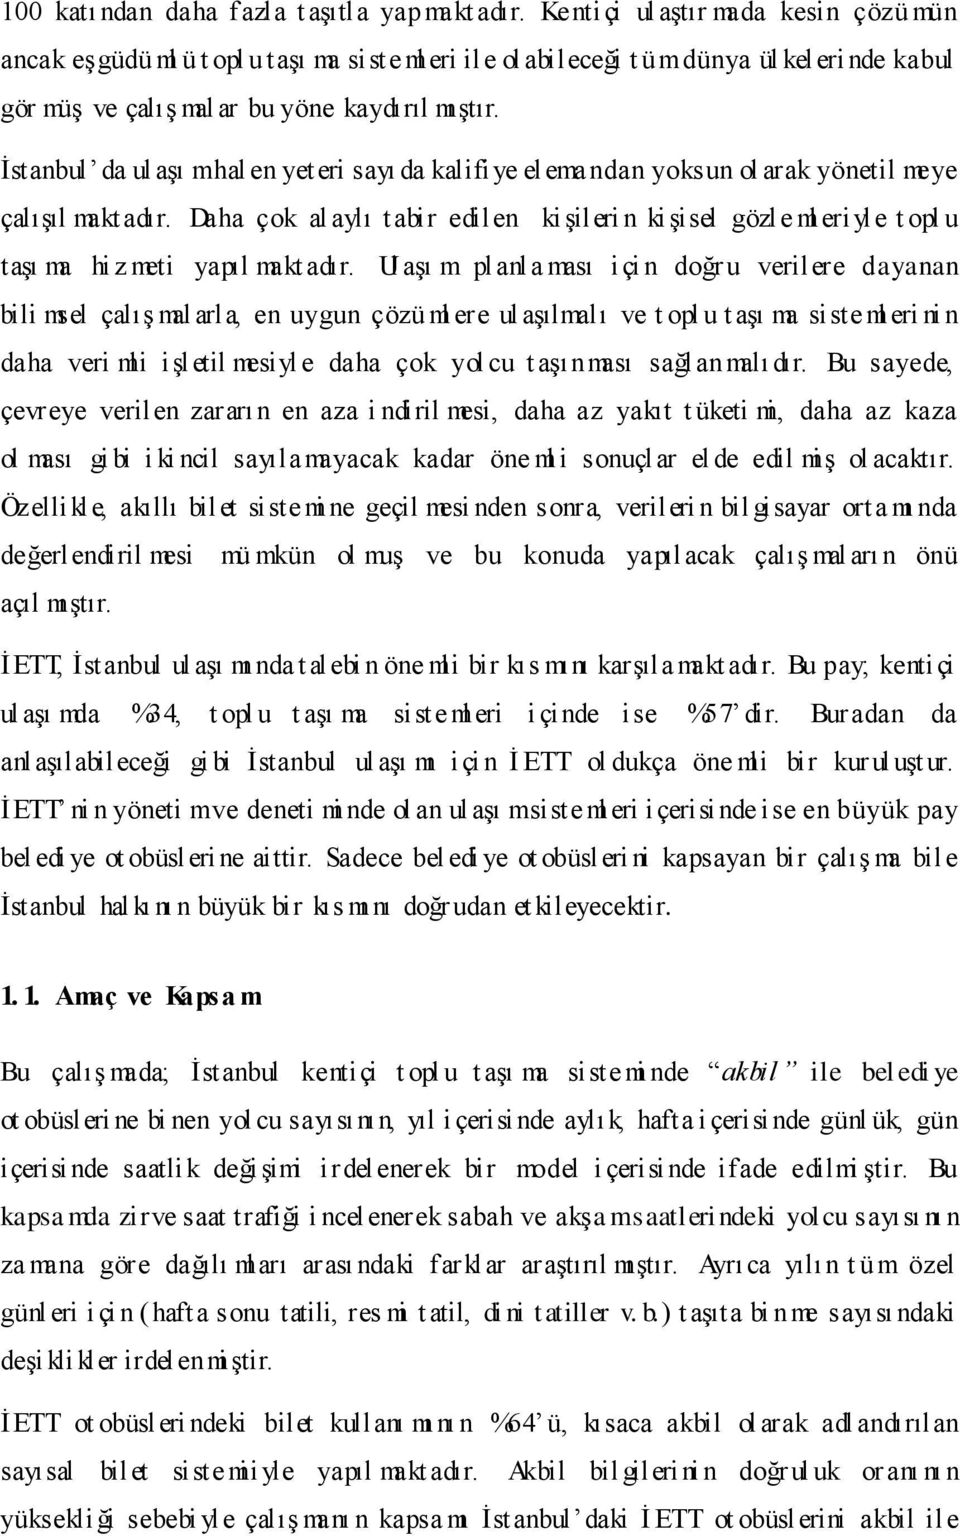 İstanbul da ul aşı m hal en yet eri sayı da kalifiye el emandan yoksun ol arak yönetil meye çalışıl makt adır.